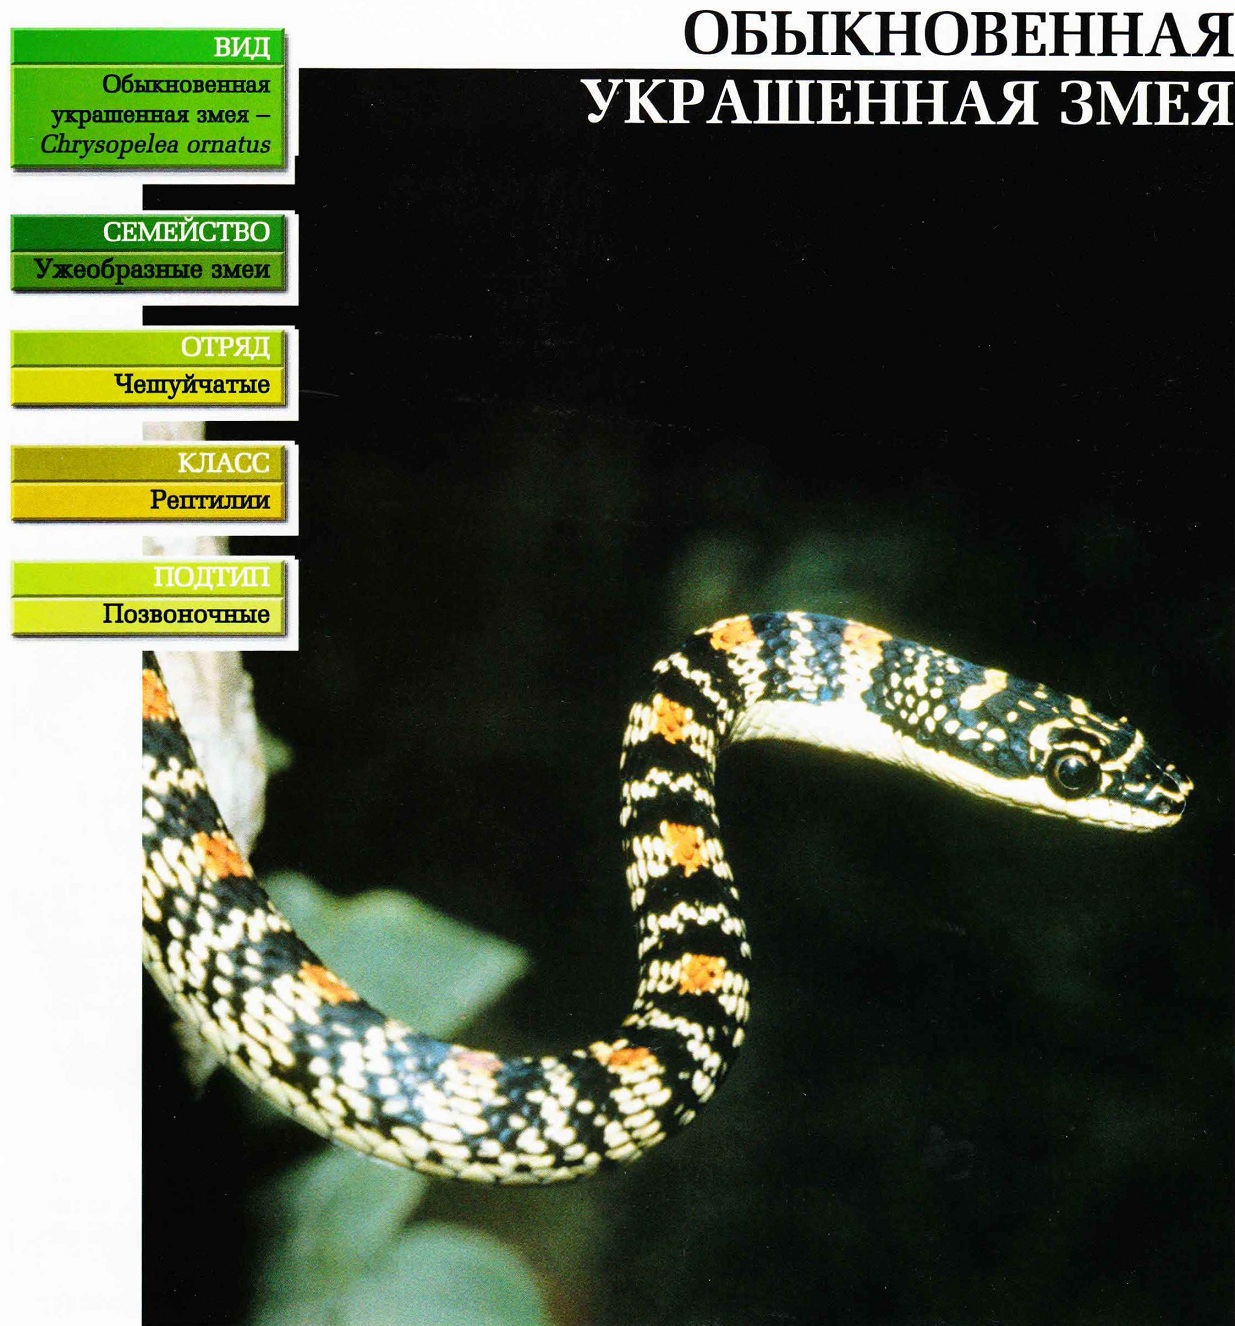 Систематика (научная классификация) украшенной змеи обыкновенной. Chrysopelea ornatus.